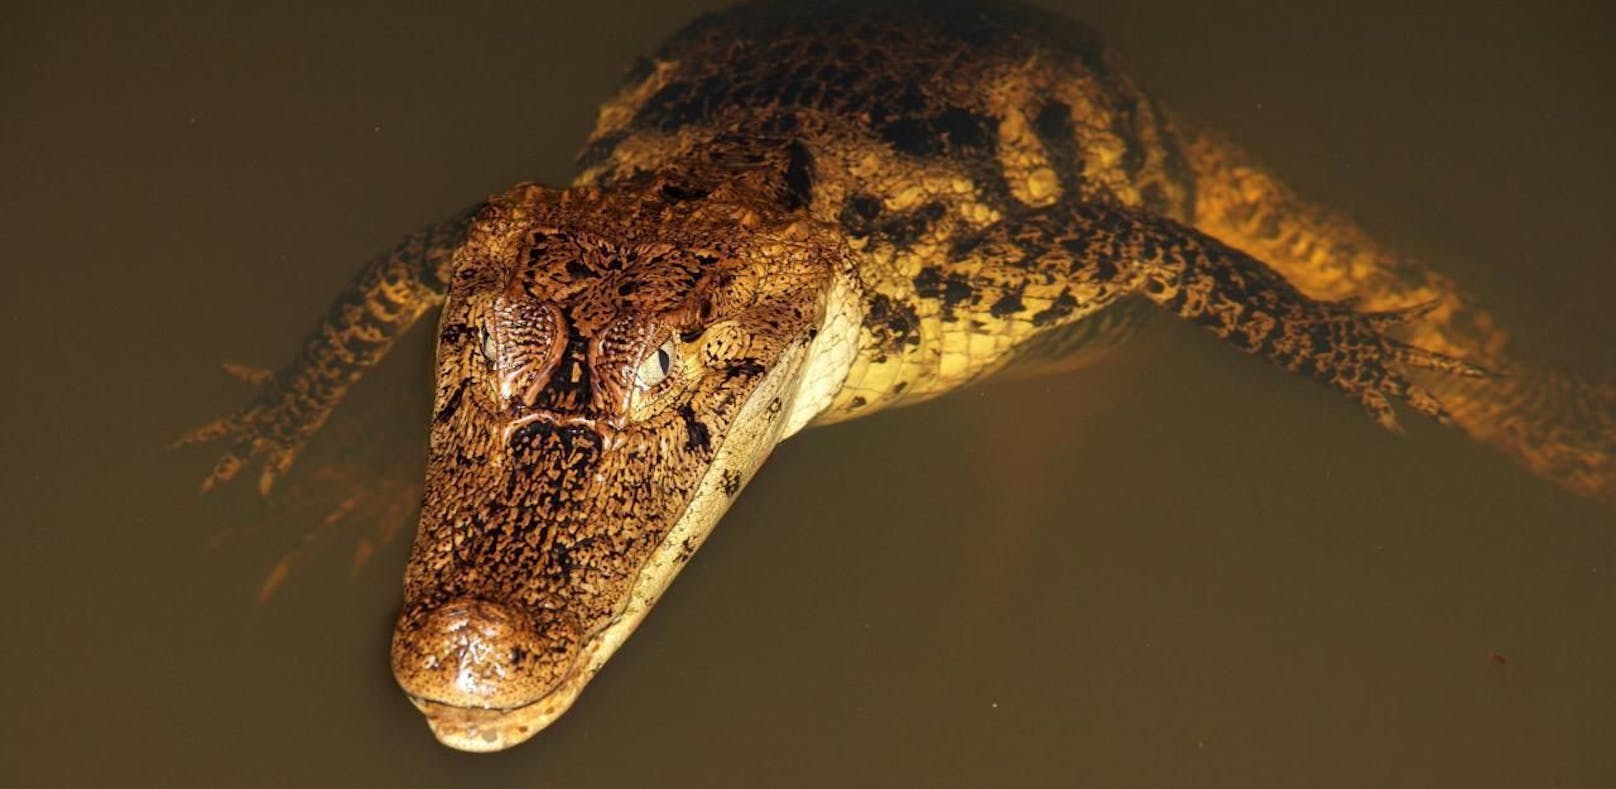 Ein Brillenkaiman (Caiman crocodilus) in einem kleinen See bei Boca Tabada, Costa Rica. Symbolfoto